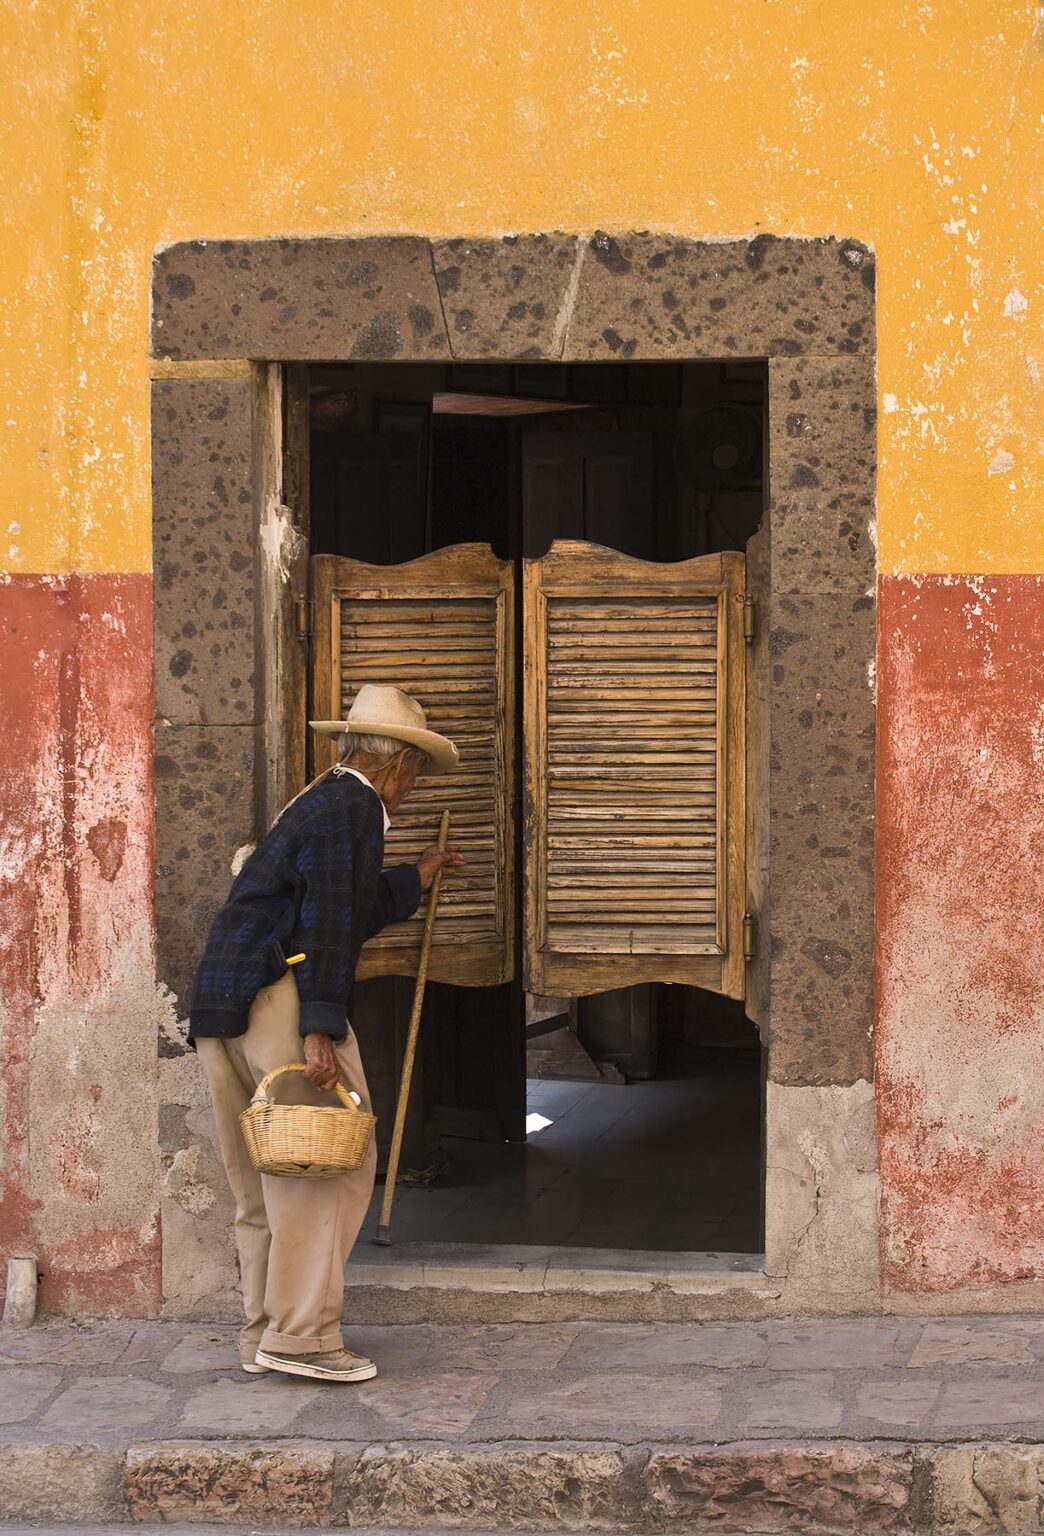 A Mexican farmer enters a SALOON - SAN MIGUEL DE ALLENDE, MEXICO